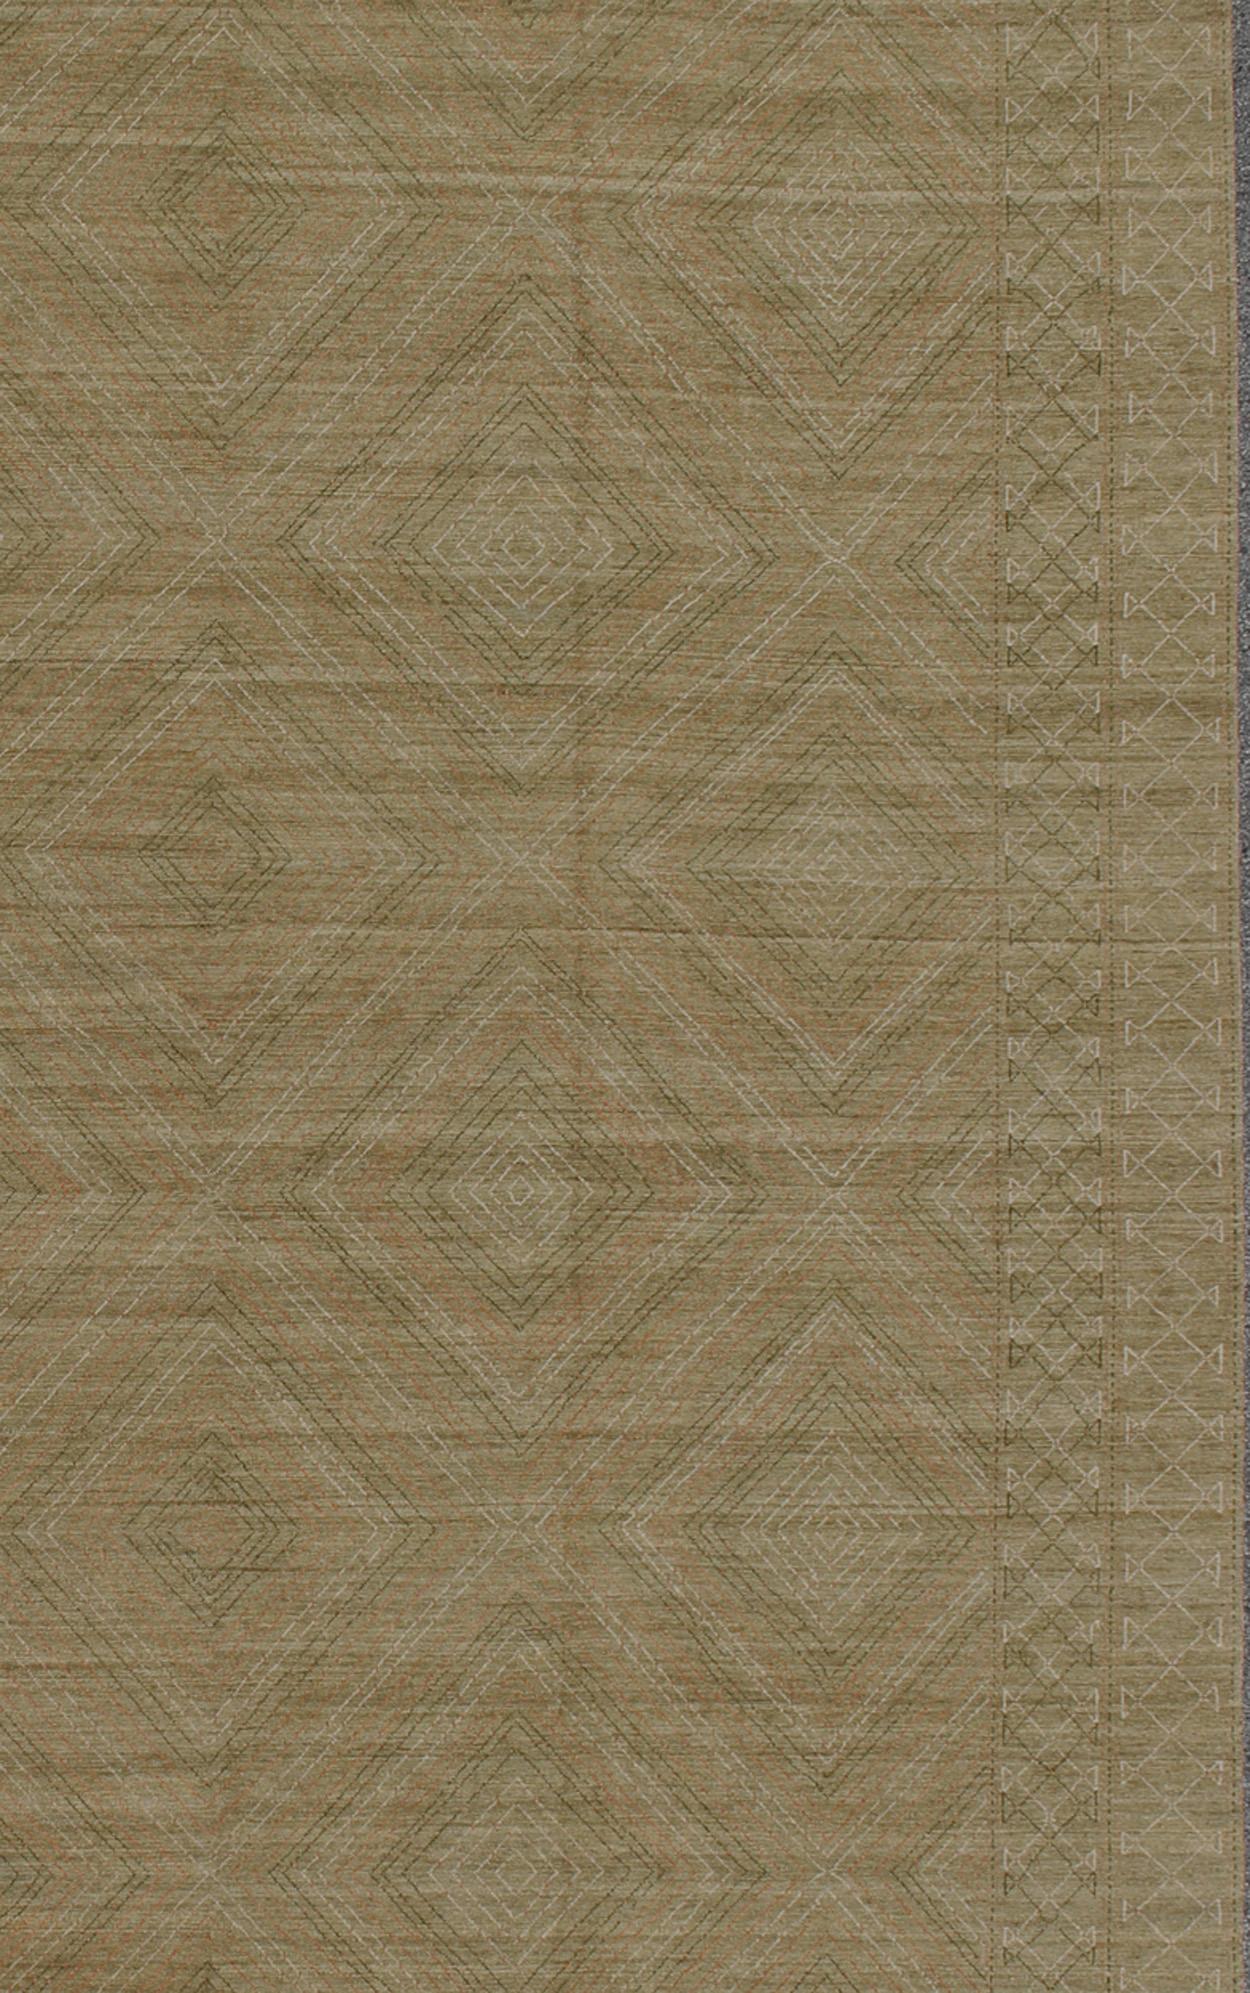 Moderner Teppich mit modernem Allover-Rautenmuster, Teppich KOL-60809 Herkunftsland / Art: Afghanistan/ Modern

Dieser moderne Teppich mit einem zeitgenössischen Design, das in einem zusammenhängenden Rautenmuster wiedergegeben wird, weist einen